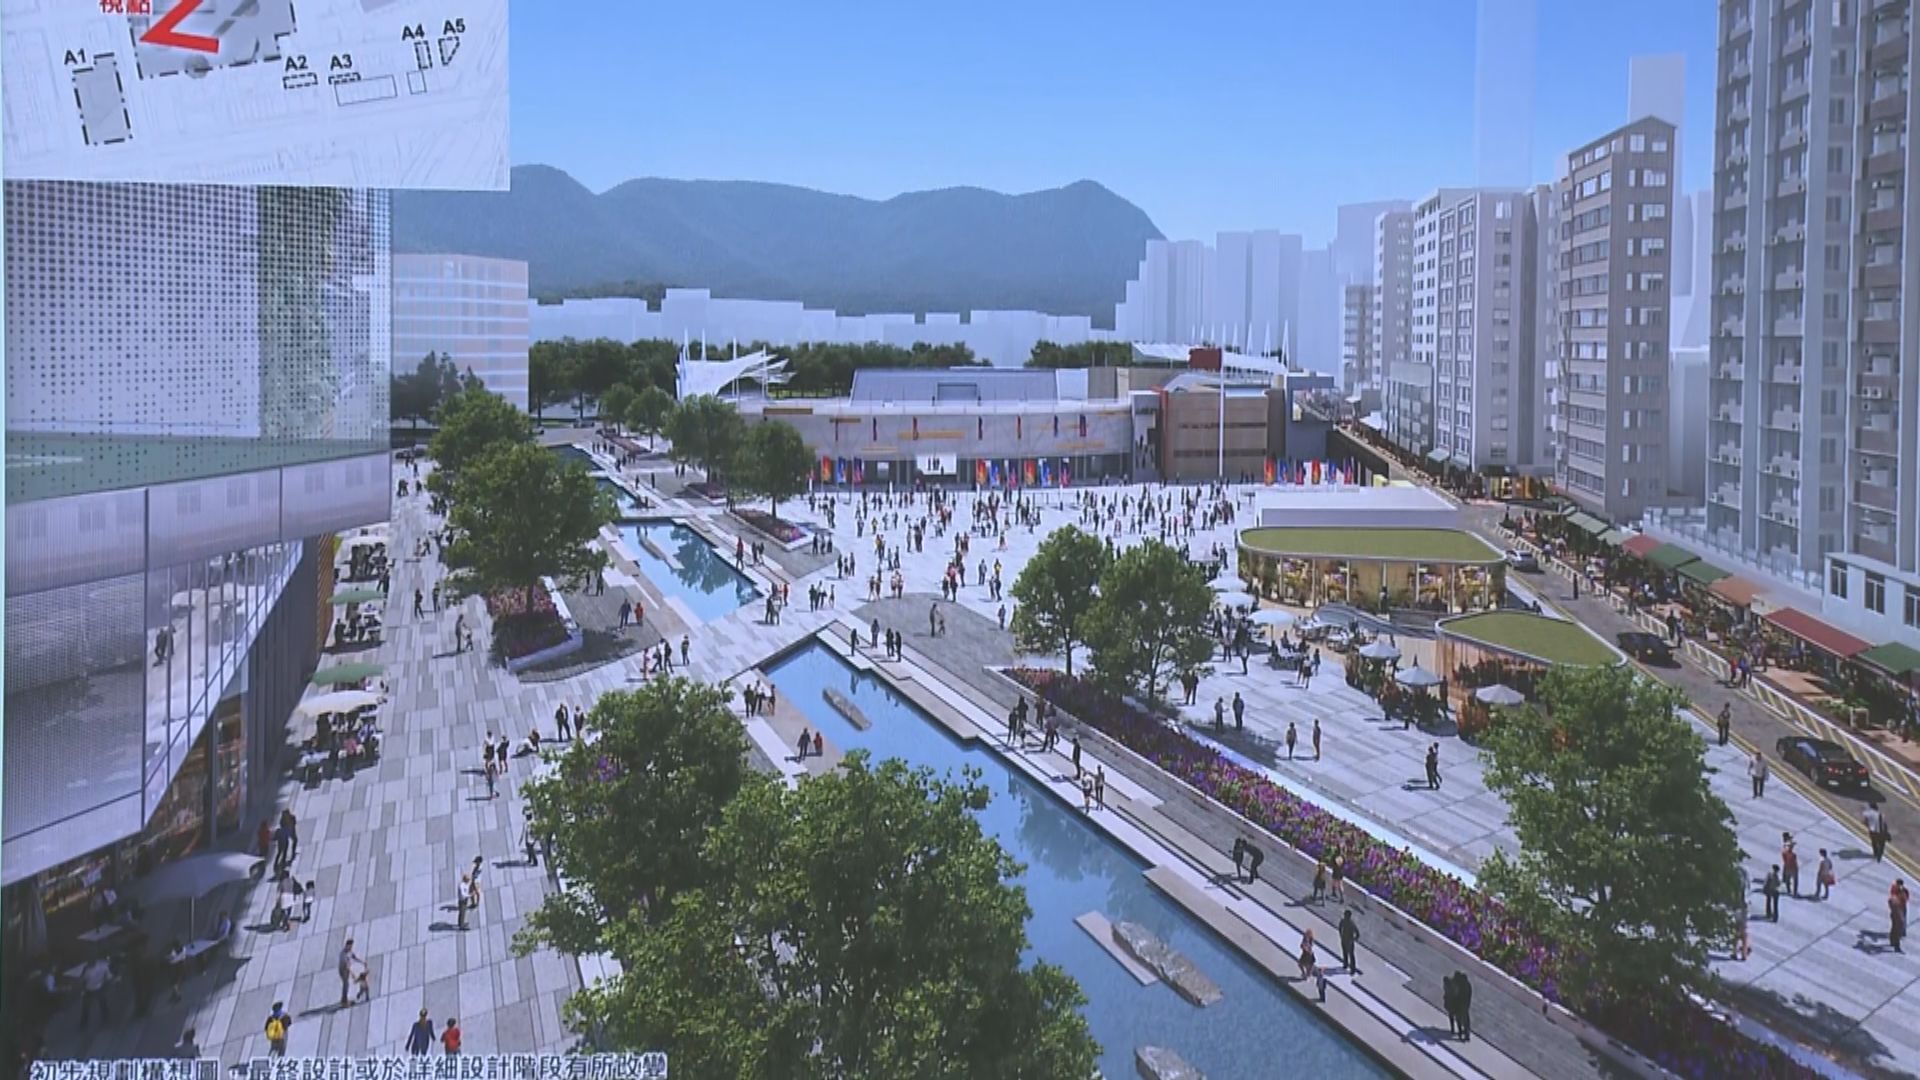 市建局花墟重建計劃 增設水道公園及多功能大樓